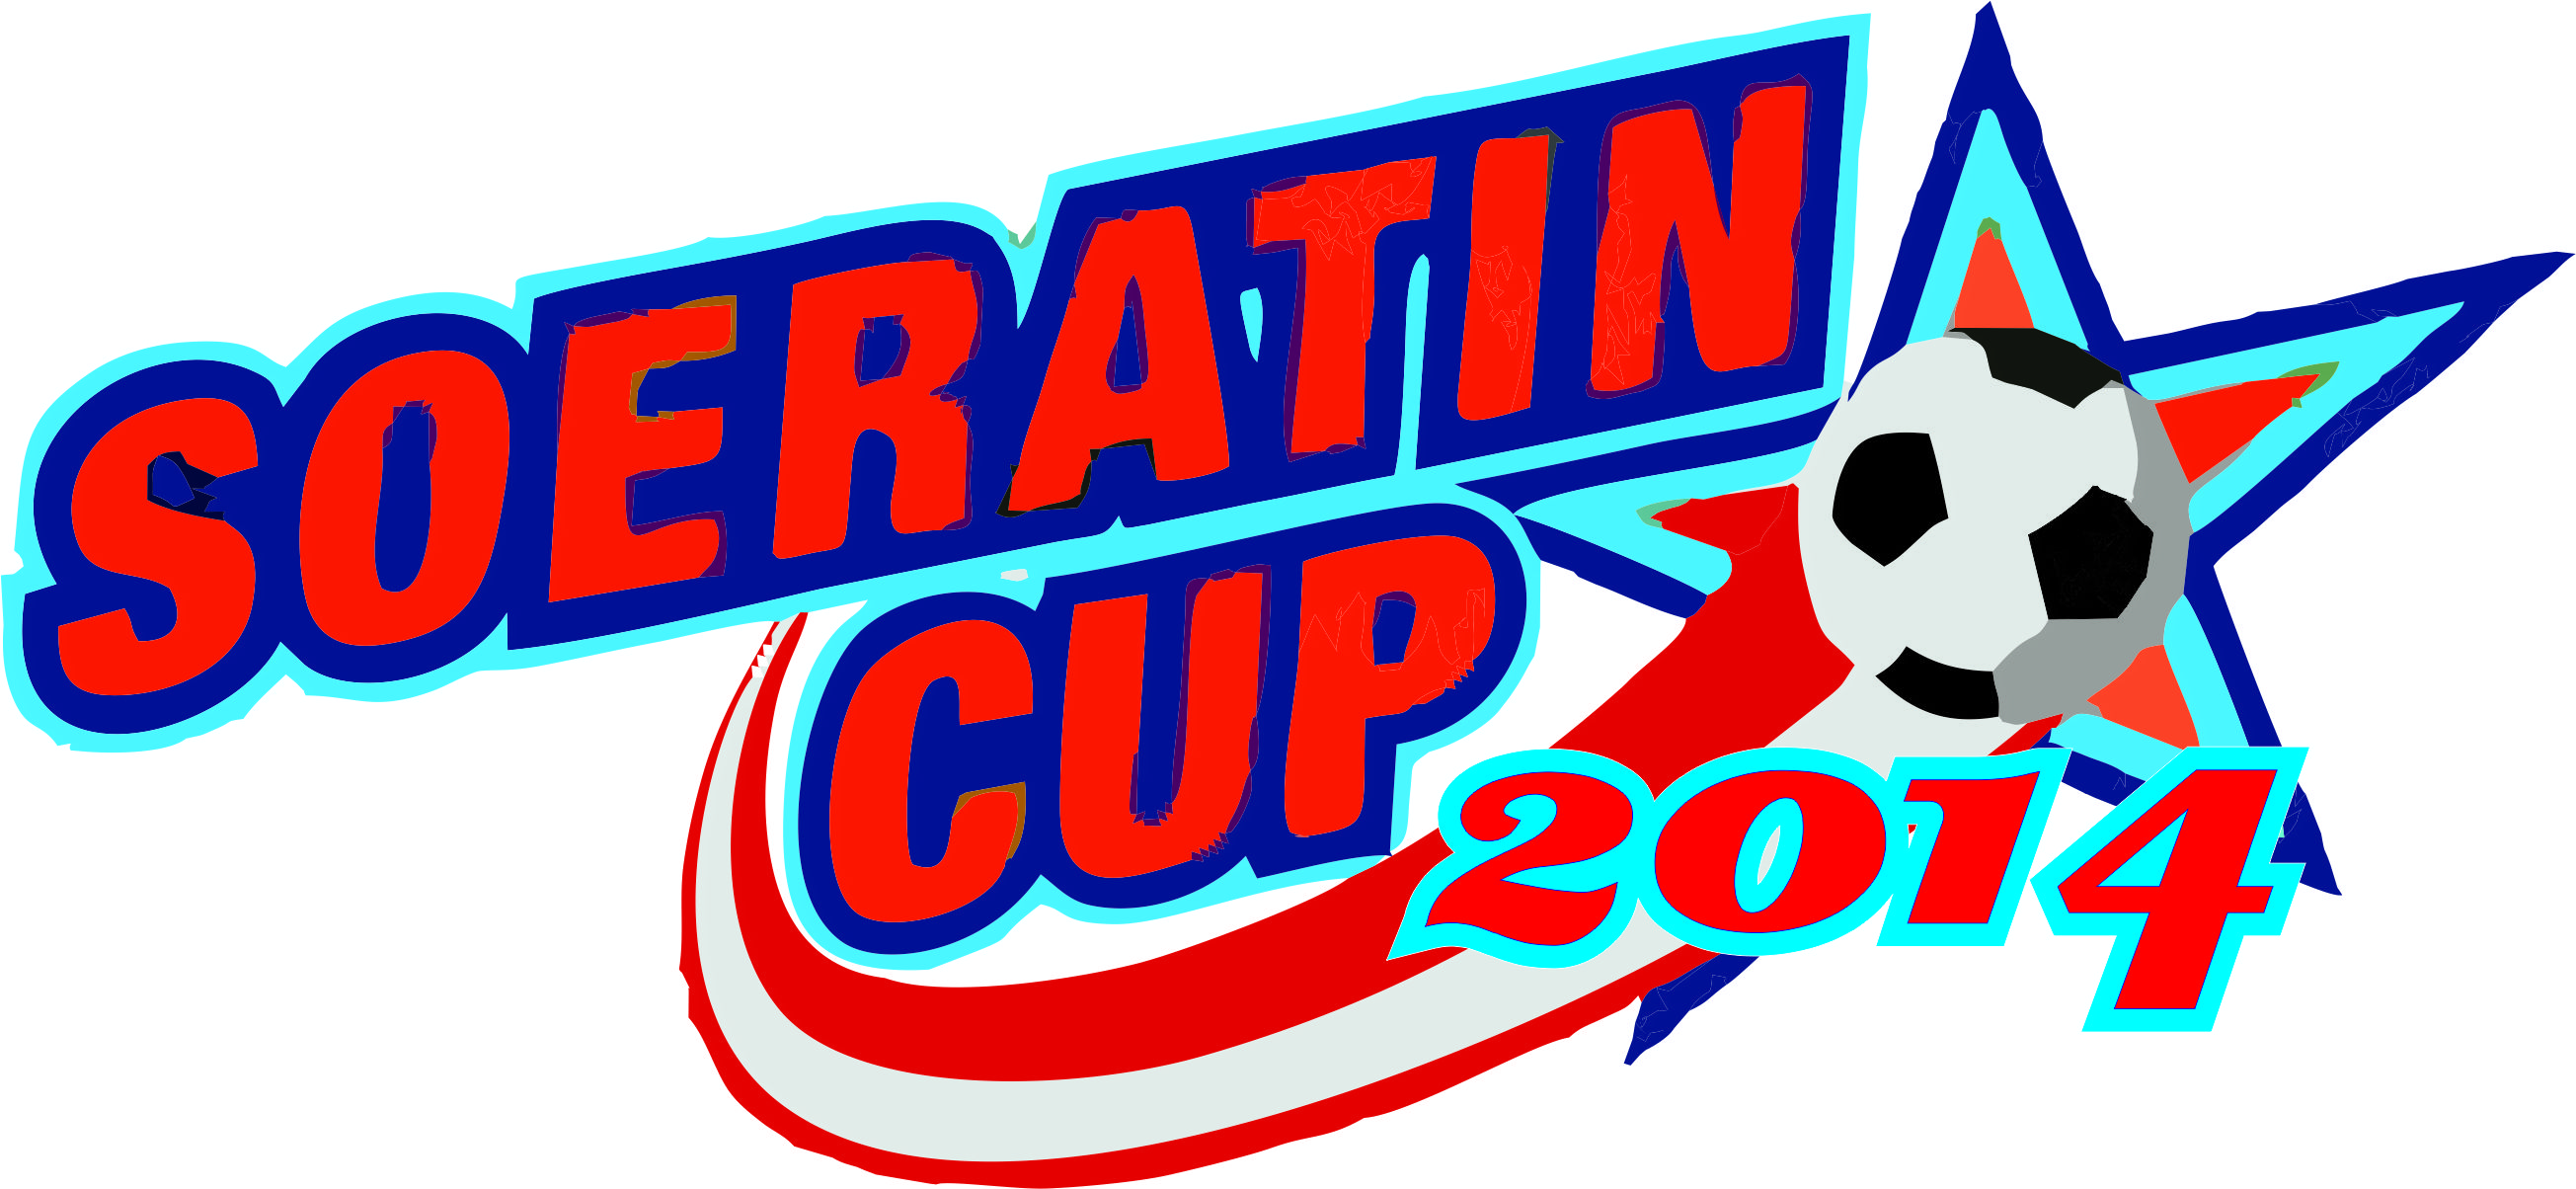 Piala Soeratin 2014